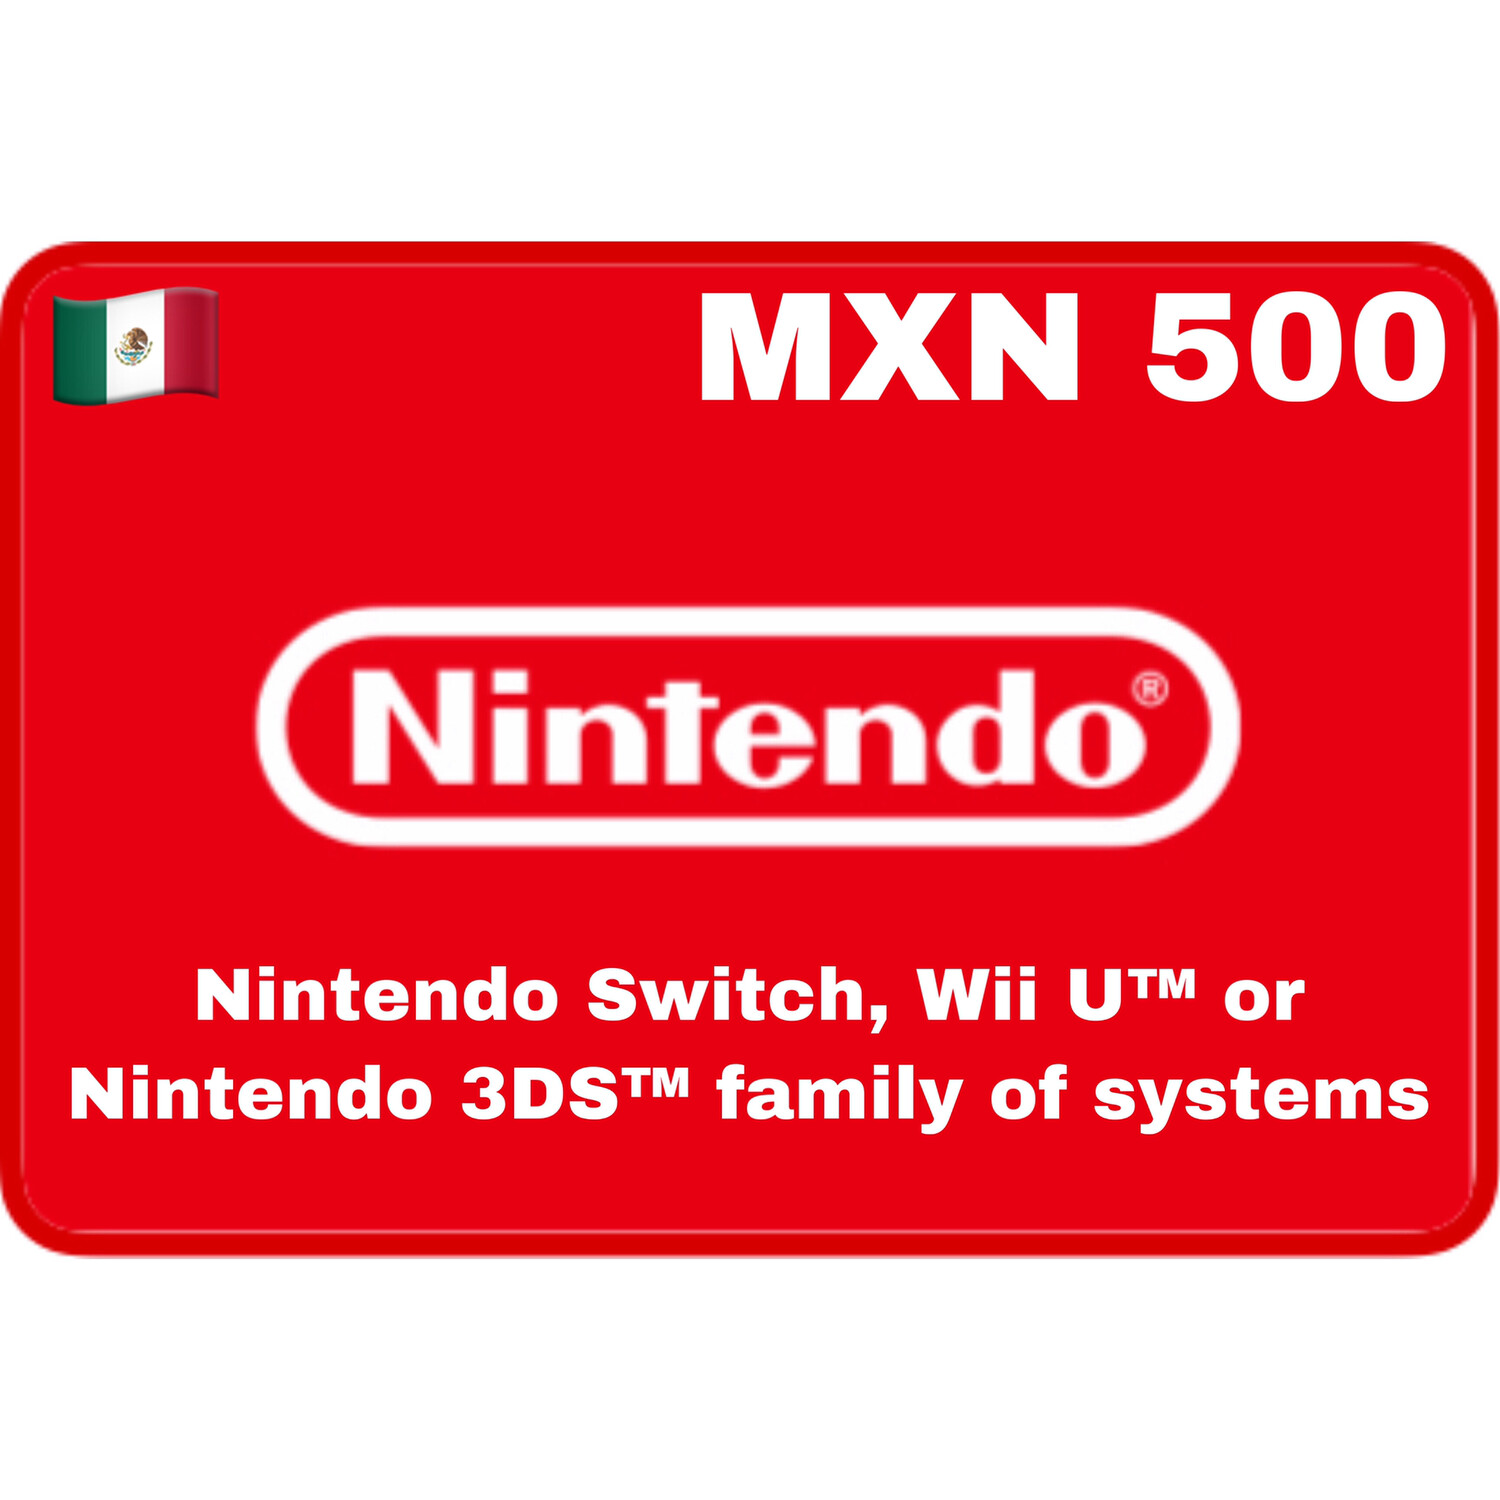 Nintendo eShop Mexico MXN 500